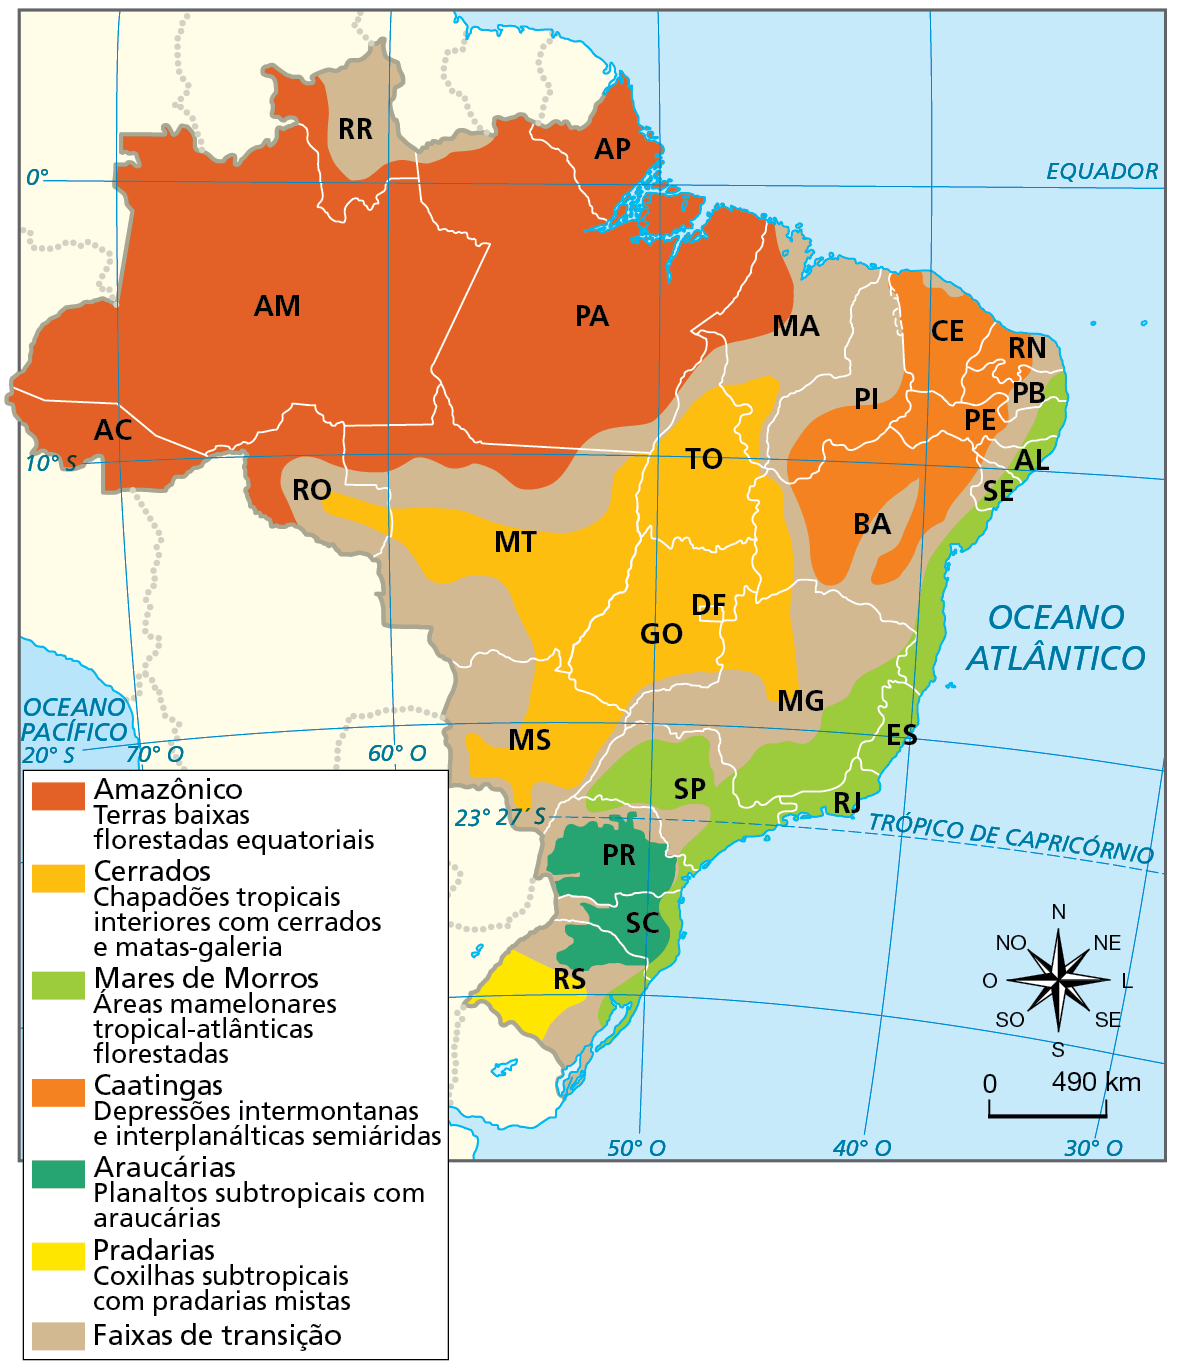 Mapa. Brasil: domínios morfoclimáticos. Mapa do Brasil mostrando a distribuição dos domínios morfoclimáticos pelo território. Domínio Amazônico (terras baixas florestadas equatoriais): Acre, Amazonas, Amapá, sul de Roraima, Pará (com exceção de uma pequena porção do sudeste), oeste do Maranhão, norte de Rondônia e de Mato Grosso, pequena faixa do norte de Tocantins. Domínio dos Cerrados (chapadões tropicais interiores com cerrados e matas-galeria): ocupa grande parte da região centro-oeste, o centro-noroeste de Minas Gerais, o oeste da Bahia, a maior parte de Tocantins, o sul do Maranhão. Domínio dos Mares de Morros (áreas mamelonares tropical-atlânticas florestadas):  faixa litorânea, do norte do Rio Grande do Sul à Paraíba, porção leste de Minas Gerais, interior do estado de São Paulo. Domínio das Caatingas (depressões intermontanas e interplanálticas semiáridas): interior dos estados da região nordeste, com exceção do Maranhão, chegando ao litoral do Rio Grande do Norte e do Ceará. Domínio das Araucárias (planaltos subtropicais com araucárias): norte do Rio Grande do Sul, centro de Santa Catarina e grande parte do Paraná. Domínio das Pradarias (coxilhas subtropicais com pradarias mistas): faixa na região centro-sudoeste do Rio Grande do Sul. Faixas de transição: margeiam os domínios morfoclimáticos, ocupando trechos em praticamente todos os estados. Estende-se em uma faixa entre Roraima e Pará e abrange, principalmente e de forma contínua, porções do interior nordestino, Minas Gerais, Mato Grosso, Mato Grosso do Sul, São Paulo e Rio Grande do Sul. Na parte inferior, rosa dos ventos e escala de 0 a 490 quilômetros.